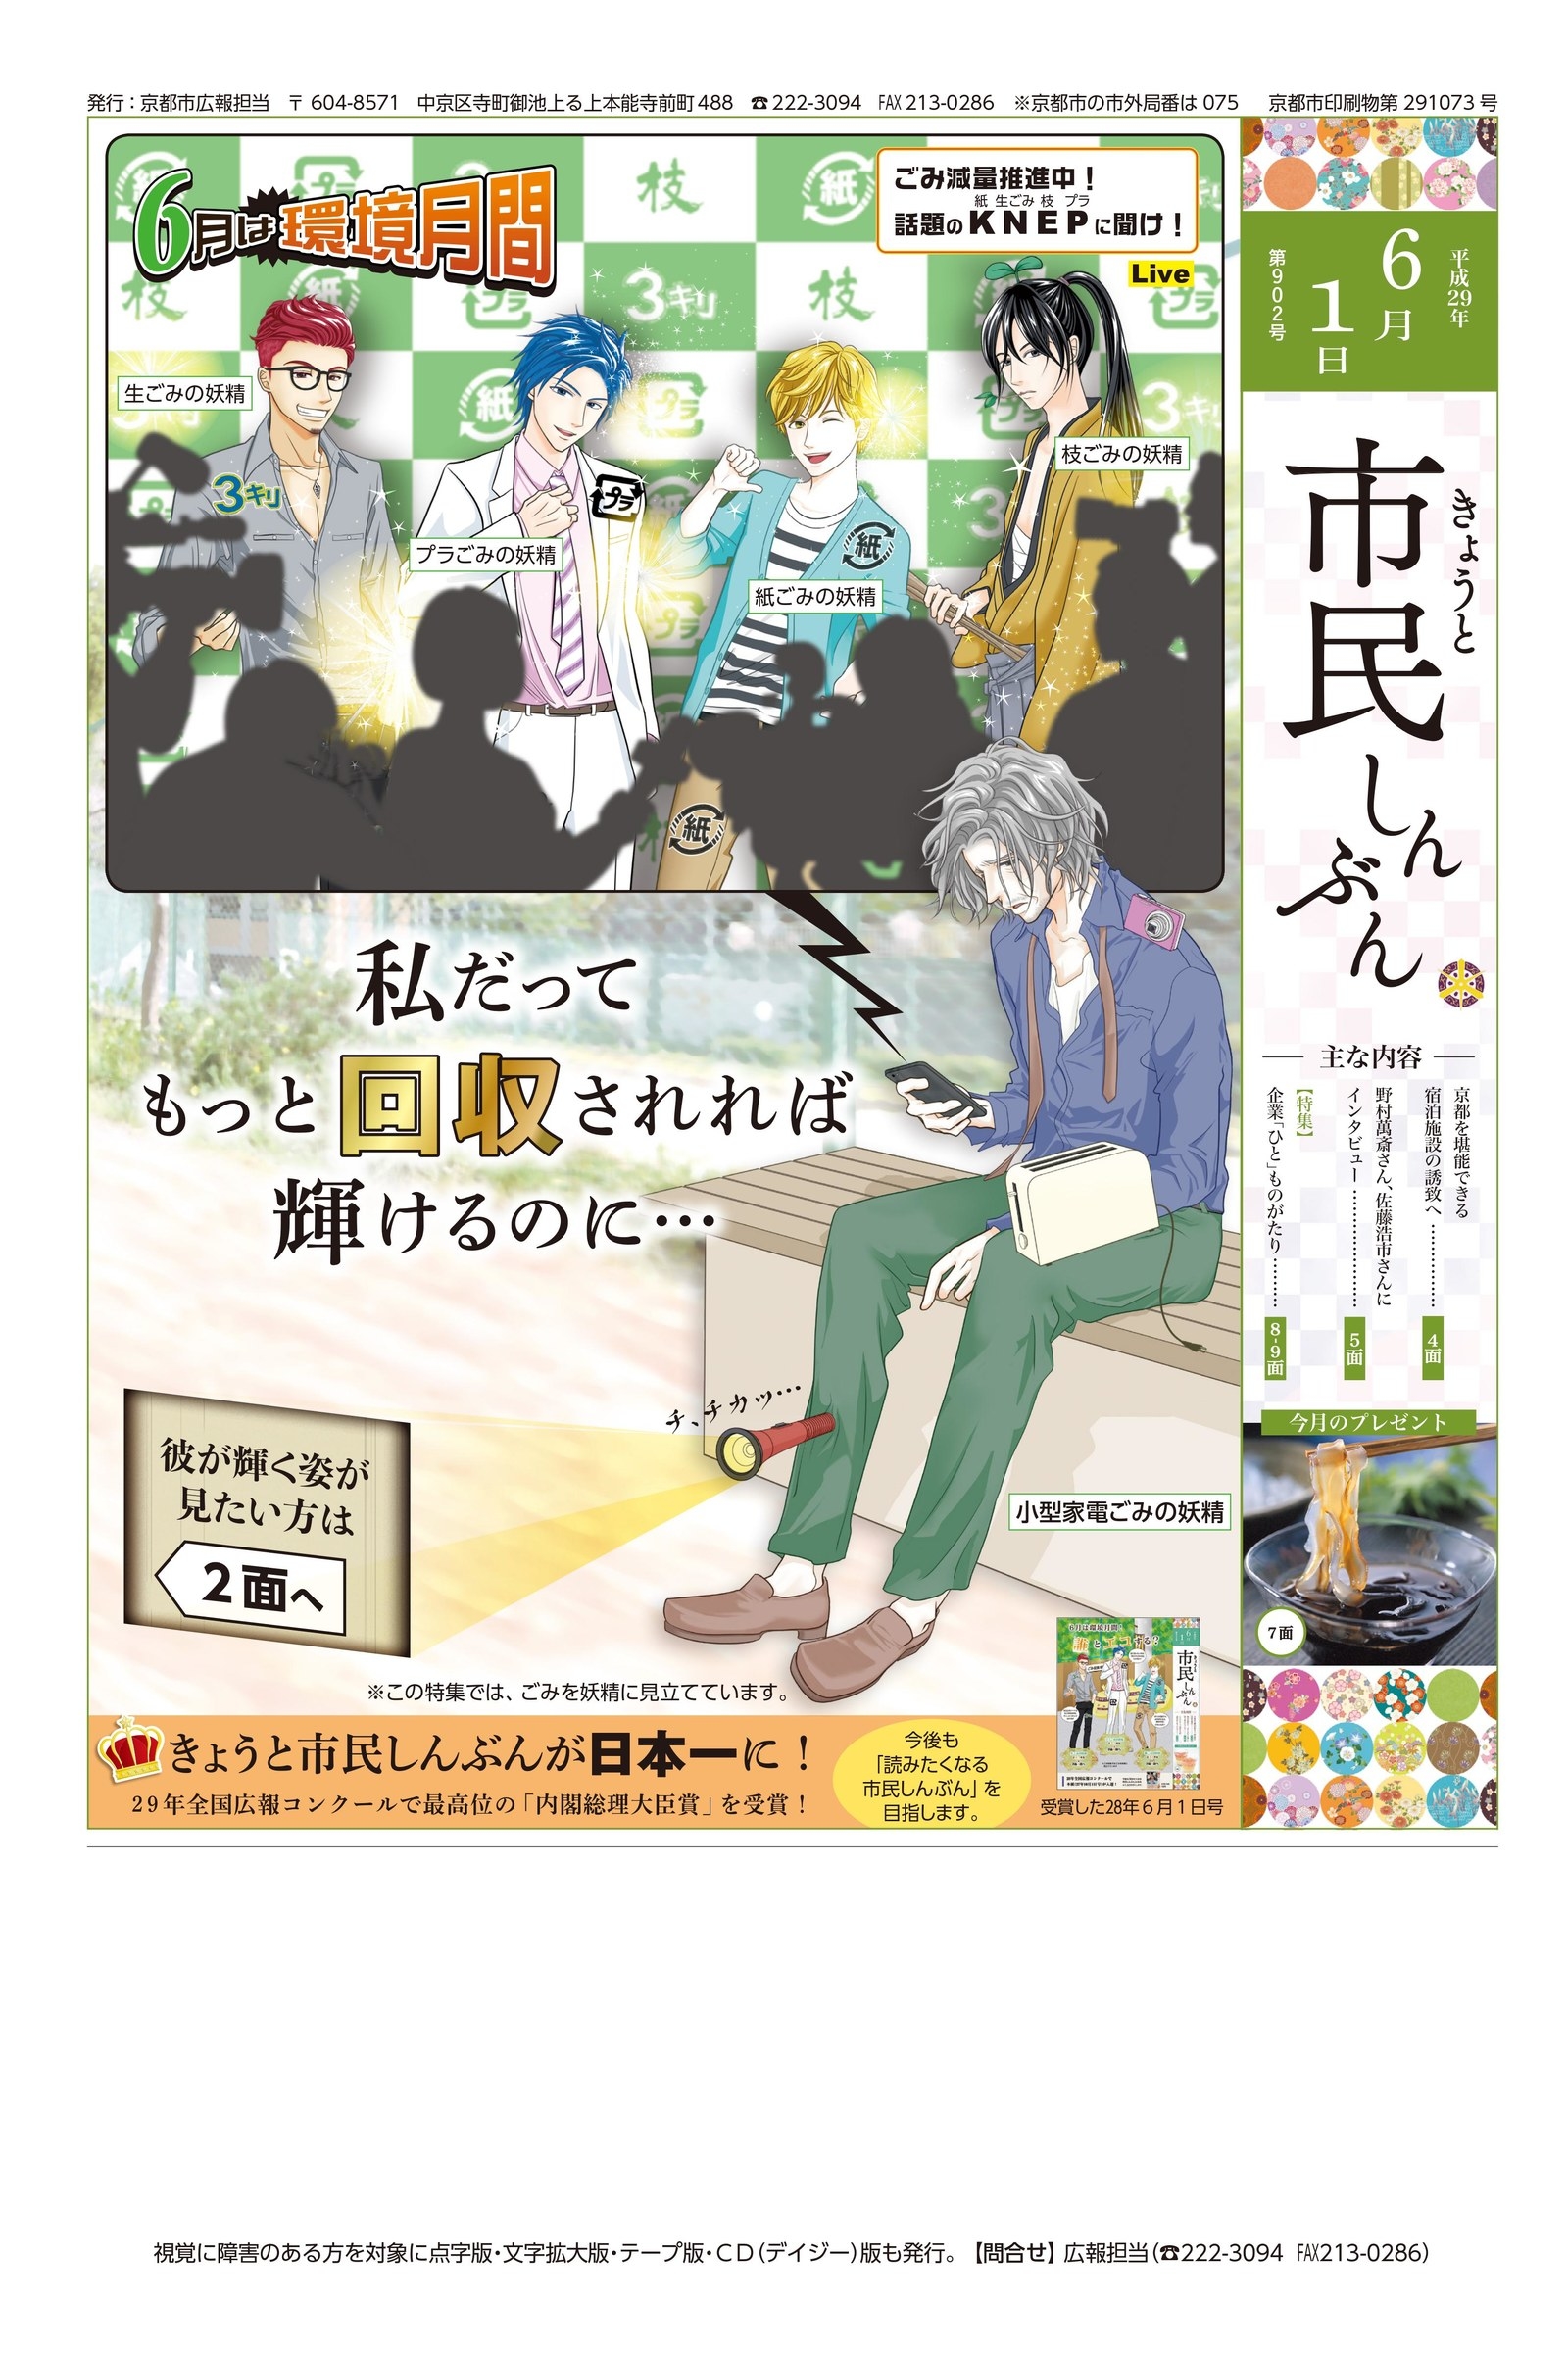 ゴミを イケメン妖精 に見立てた京都の広報紙が えらいことになってる と話題 批判は覚悟の上です